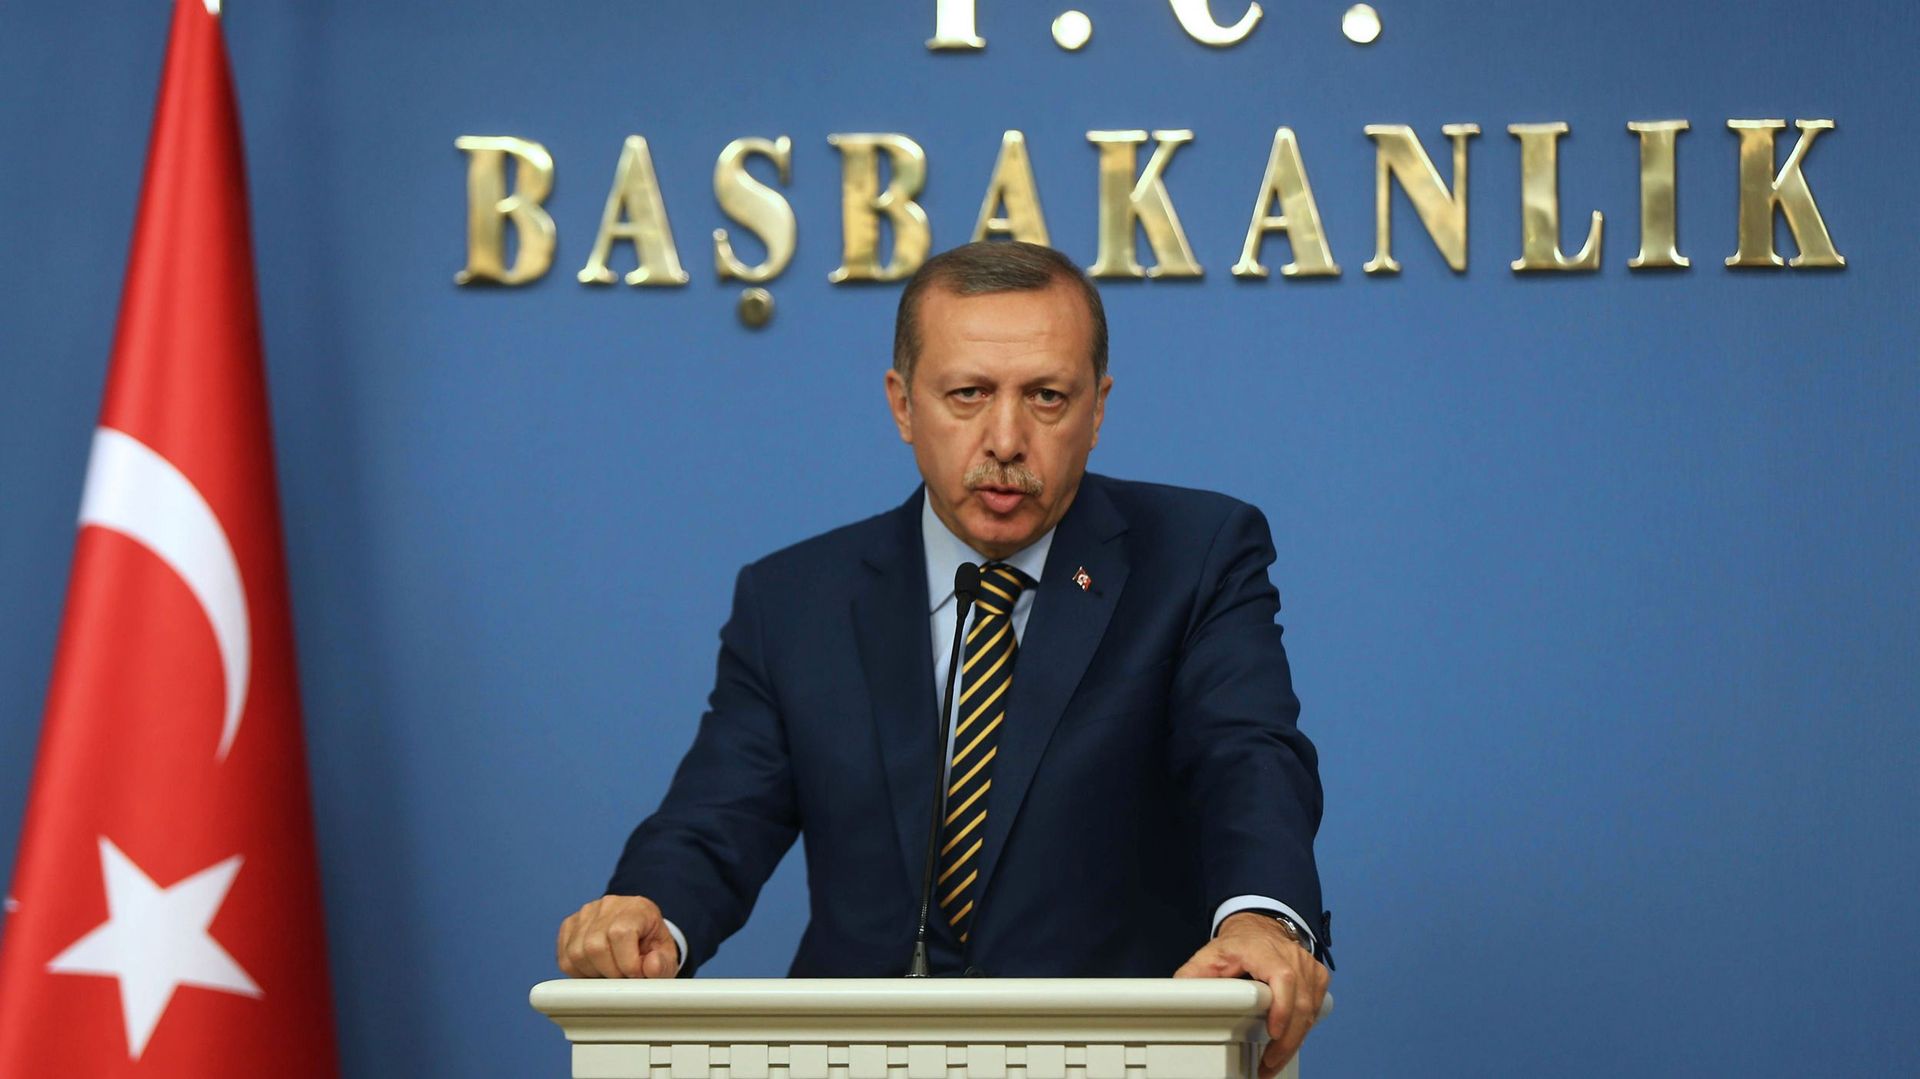 Turquie: vaste remaniement ministériel suite au scandale de corruption